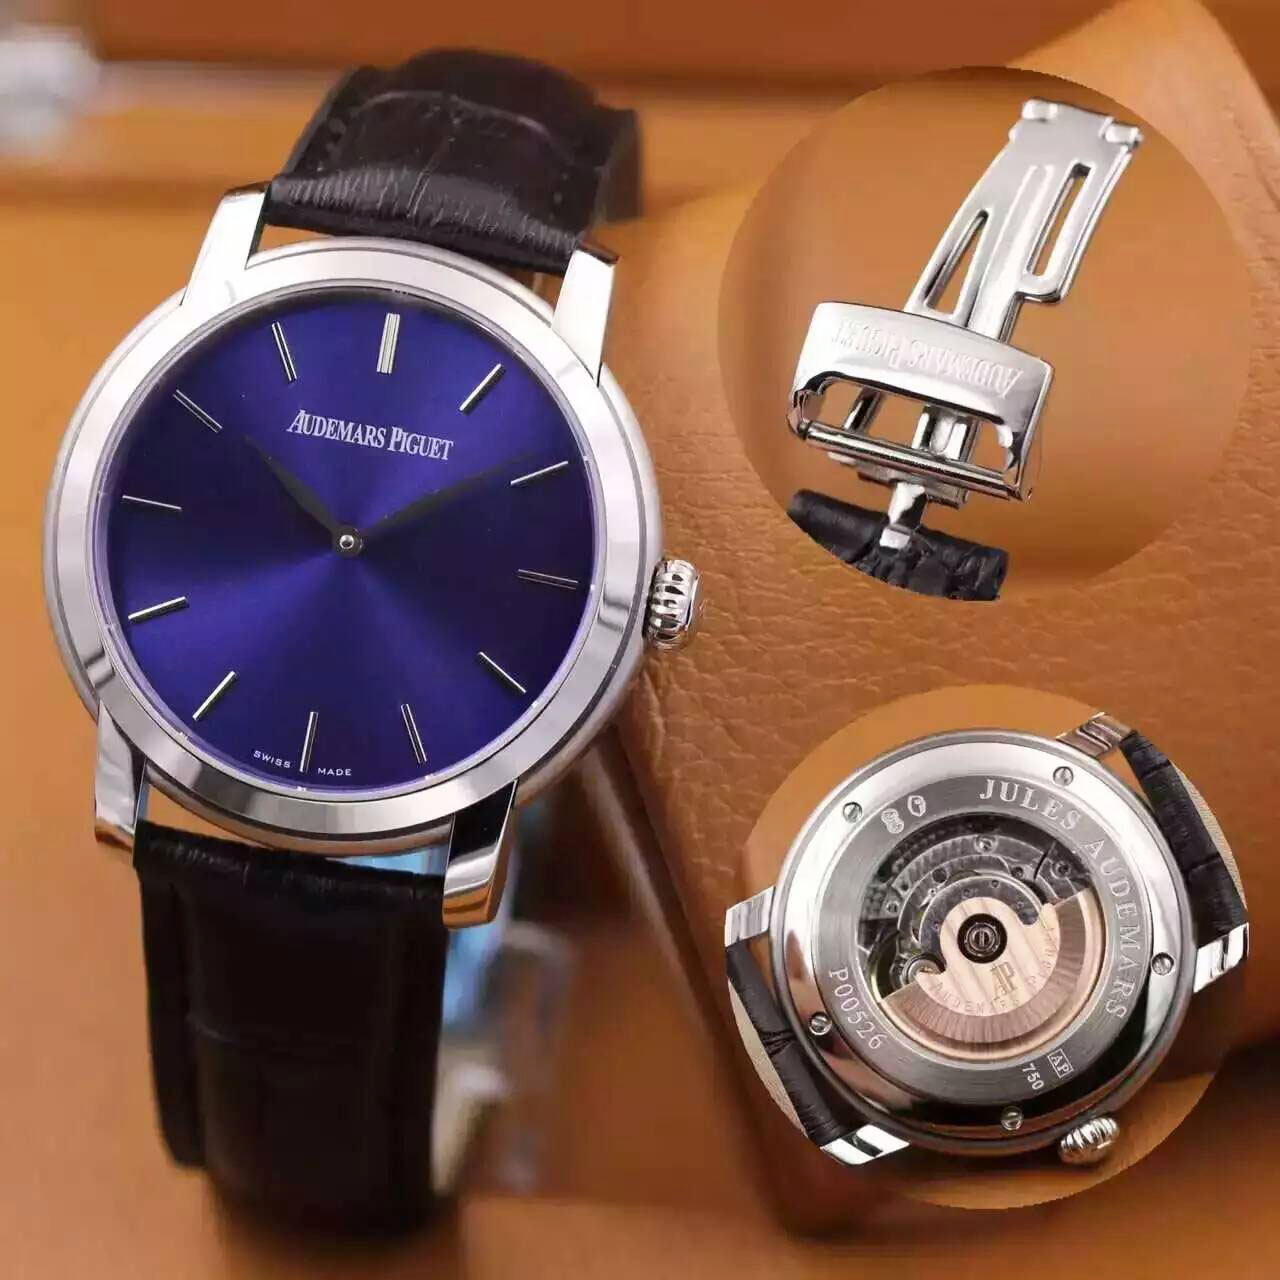 愛彼 AP 巴塞爾錶展推出全新系列 新款男士機械腕錶 搭載瑞士2824機芯